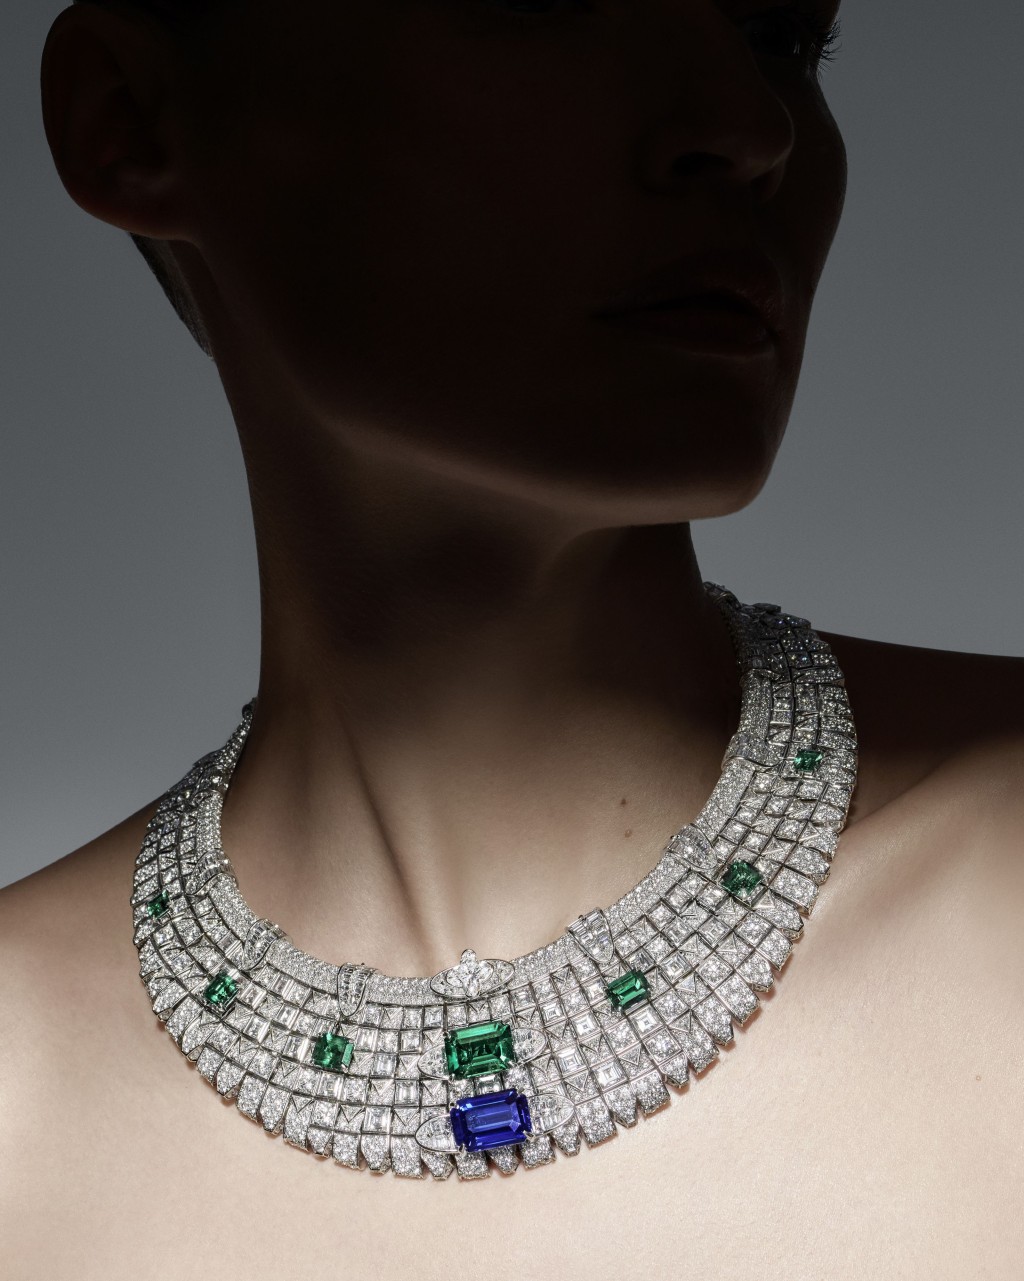 Liberty鑽石項鏈從品牌Damier格紋衍生出恍如馬賽克的圖案，配以方形或三角形切割的鑽石，拼湊出更貼膚的效果。當中分布鑲嵌的藍寶石及哥倫比亞祖母綠，還有品牌專利的Flower Cut鑽石。